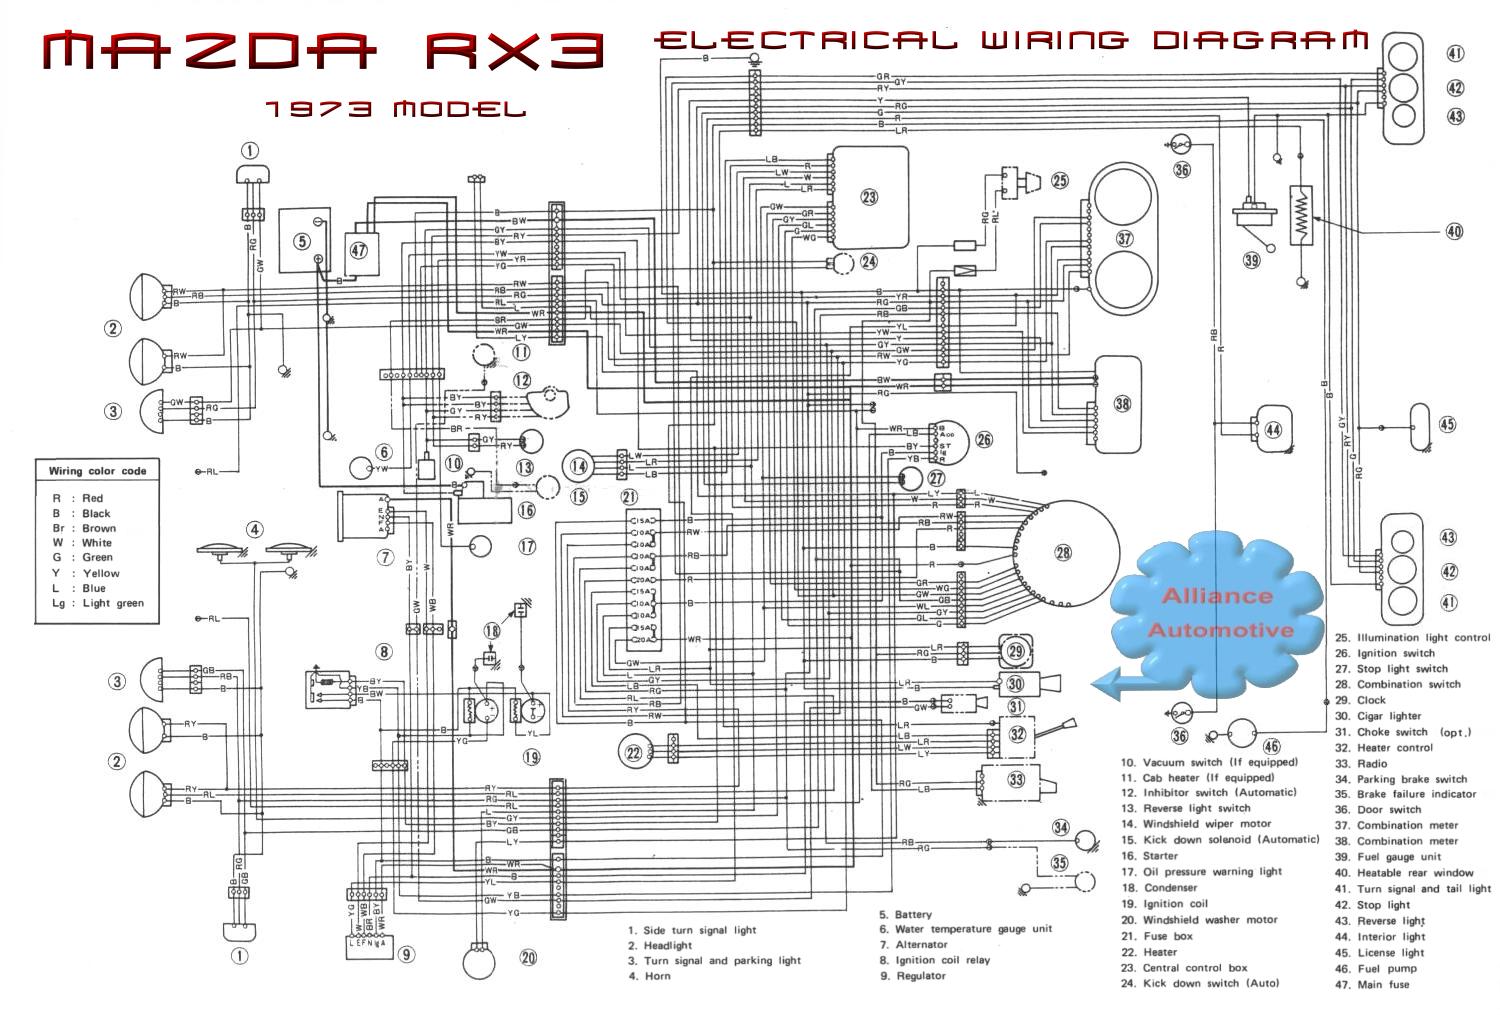 enterview 5 wiring diagram